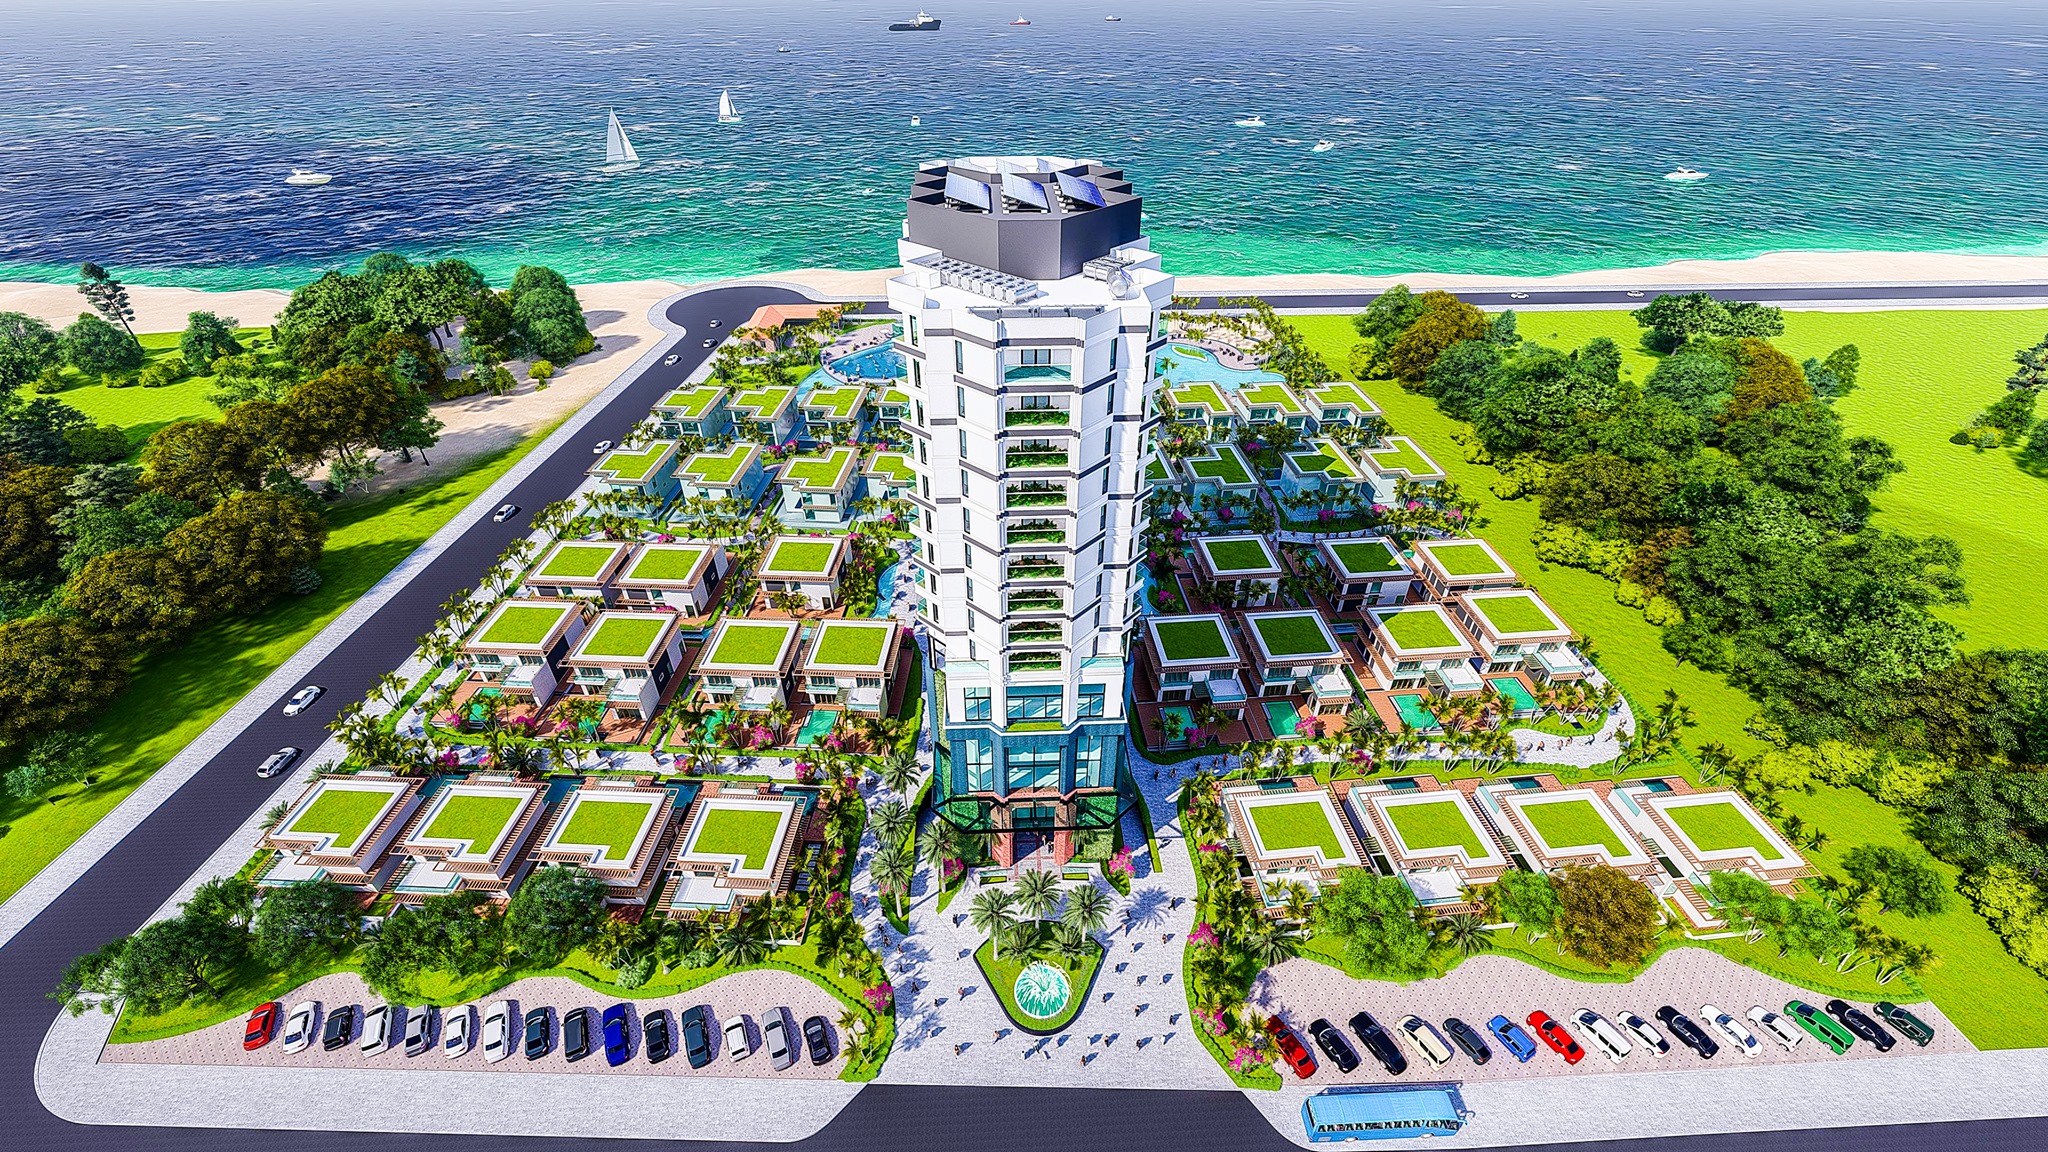 Ngoài 36 căn villa, Dự án  Khu nghỉ dưỡng cao cấp Aminia Ninh Chữ  còn có hạng mục khách sạn cao 15 tầng, hồ bơi, nhà hàng. Ảnh phối cảnh.